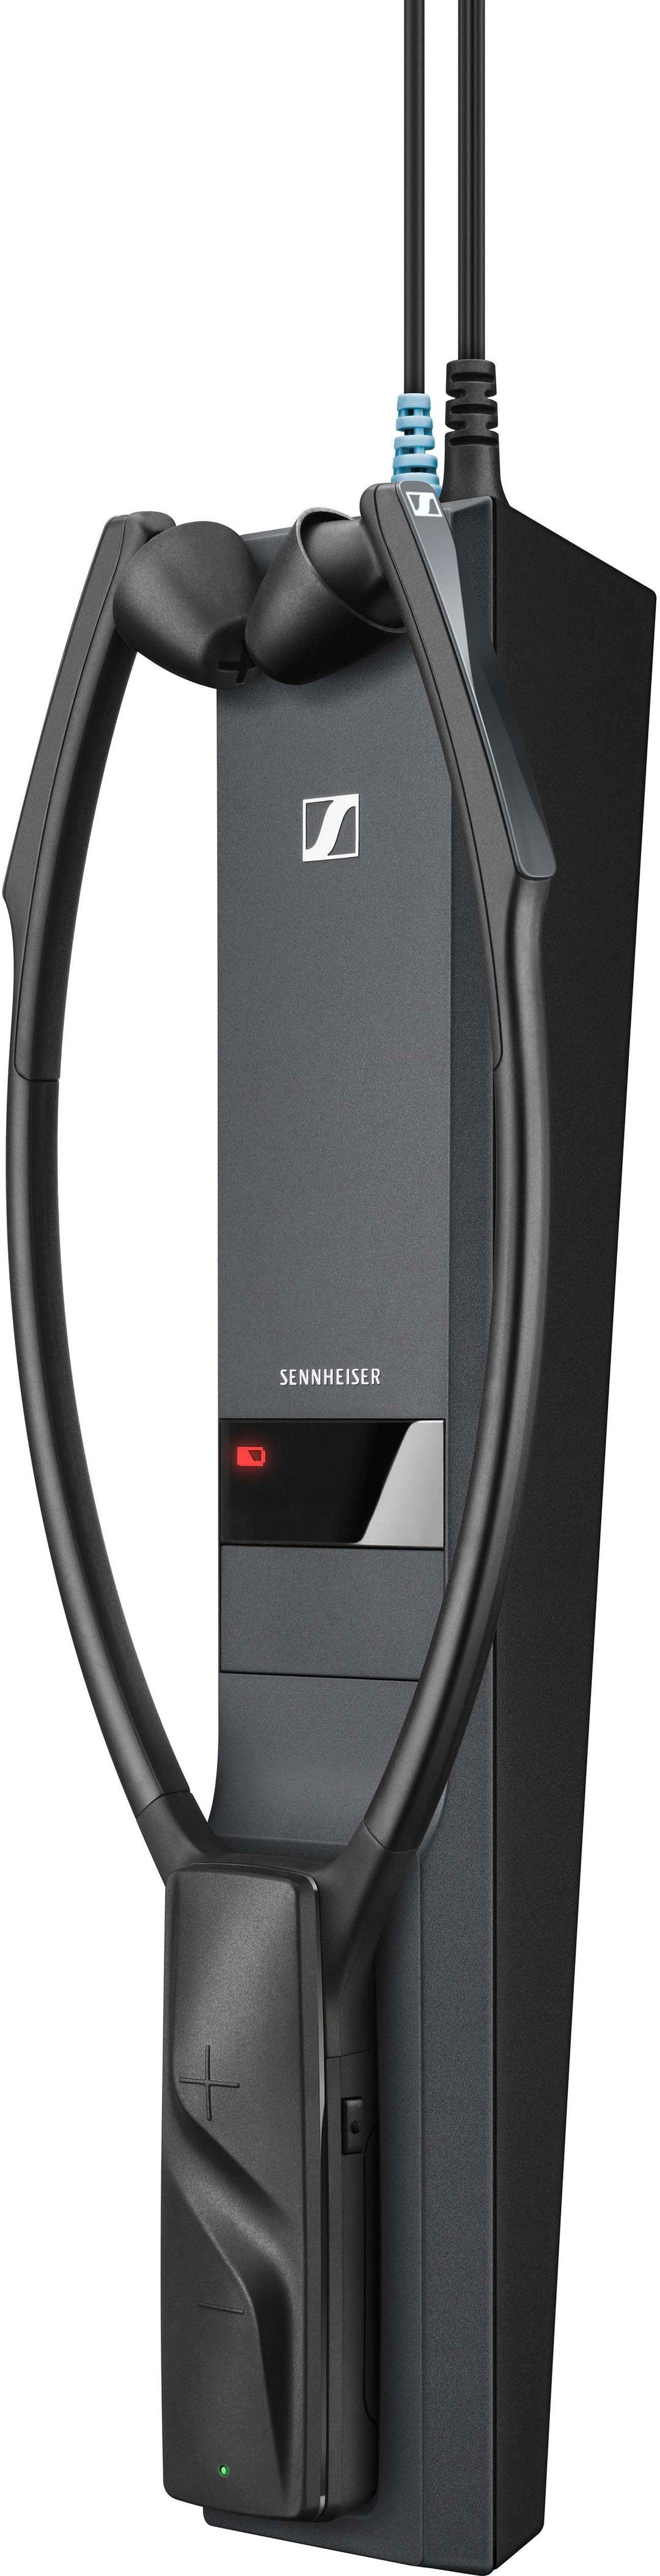 Sennheiser - RS 2000 Digital Wireless Headphone for TV Listening - Black_1